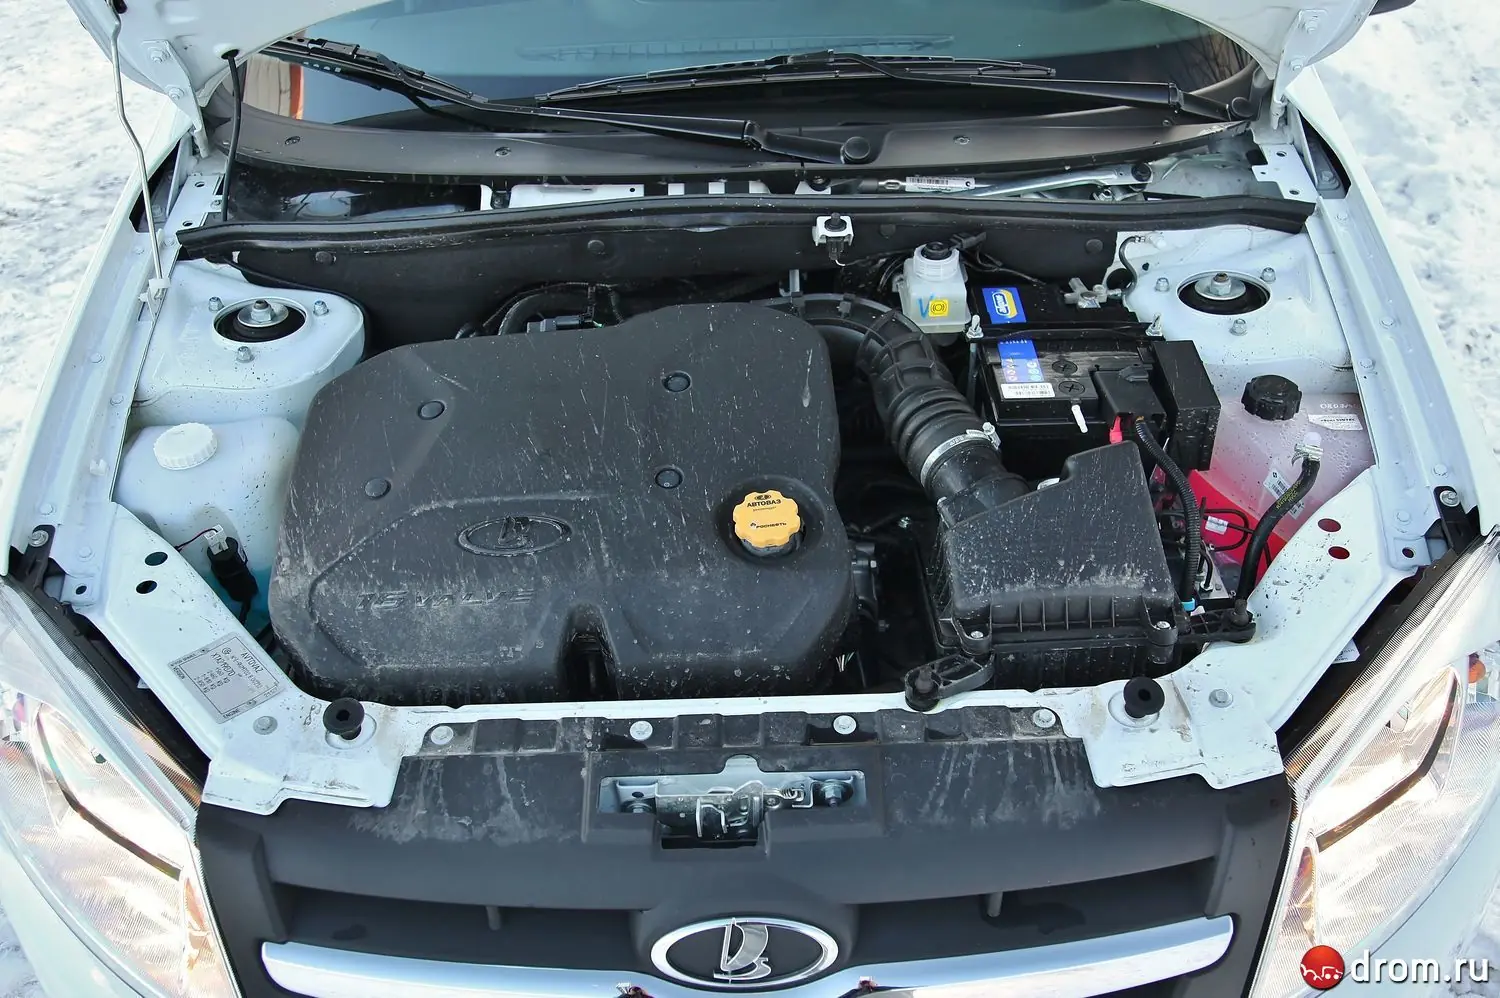 Datsun on-do 16 клапанный двигатель